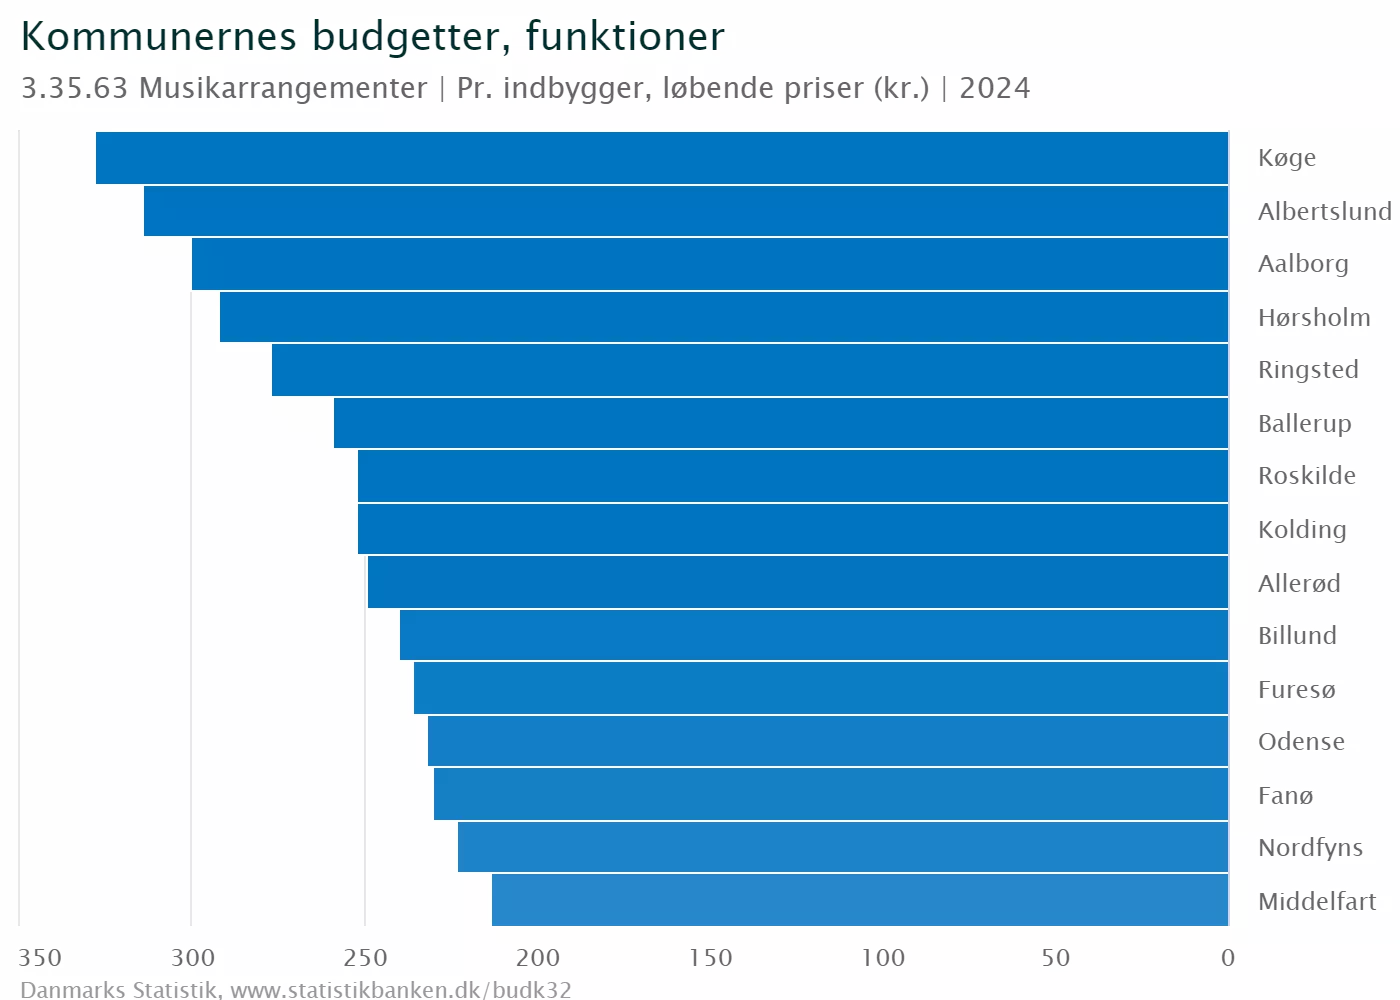 Top 15 kommuner som budgetterer flest penge per indbygger til musikarrangementer i 2024